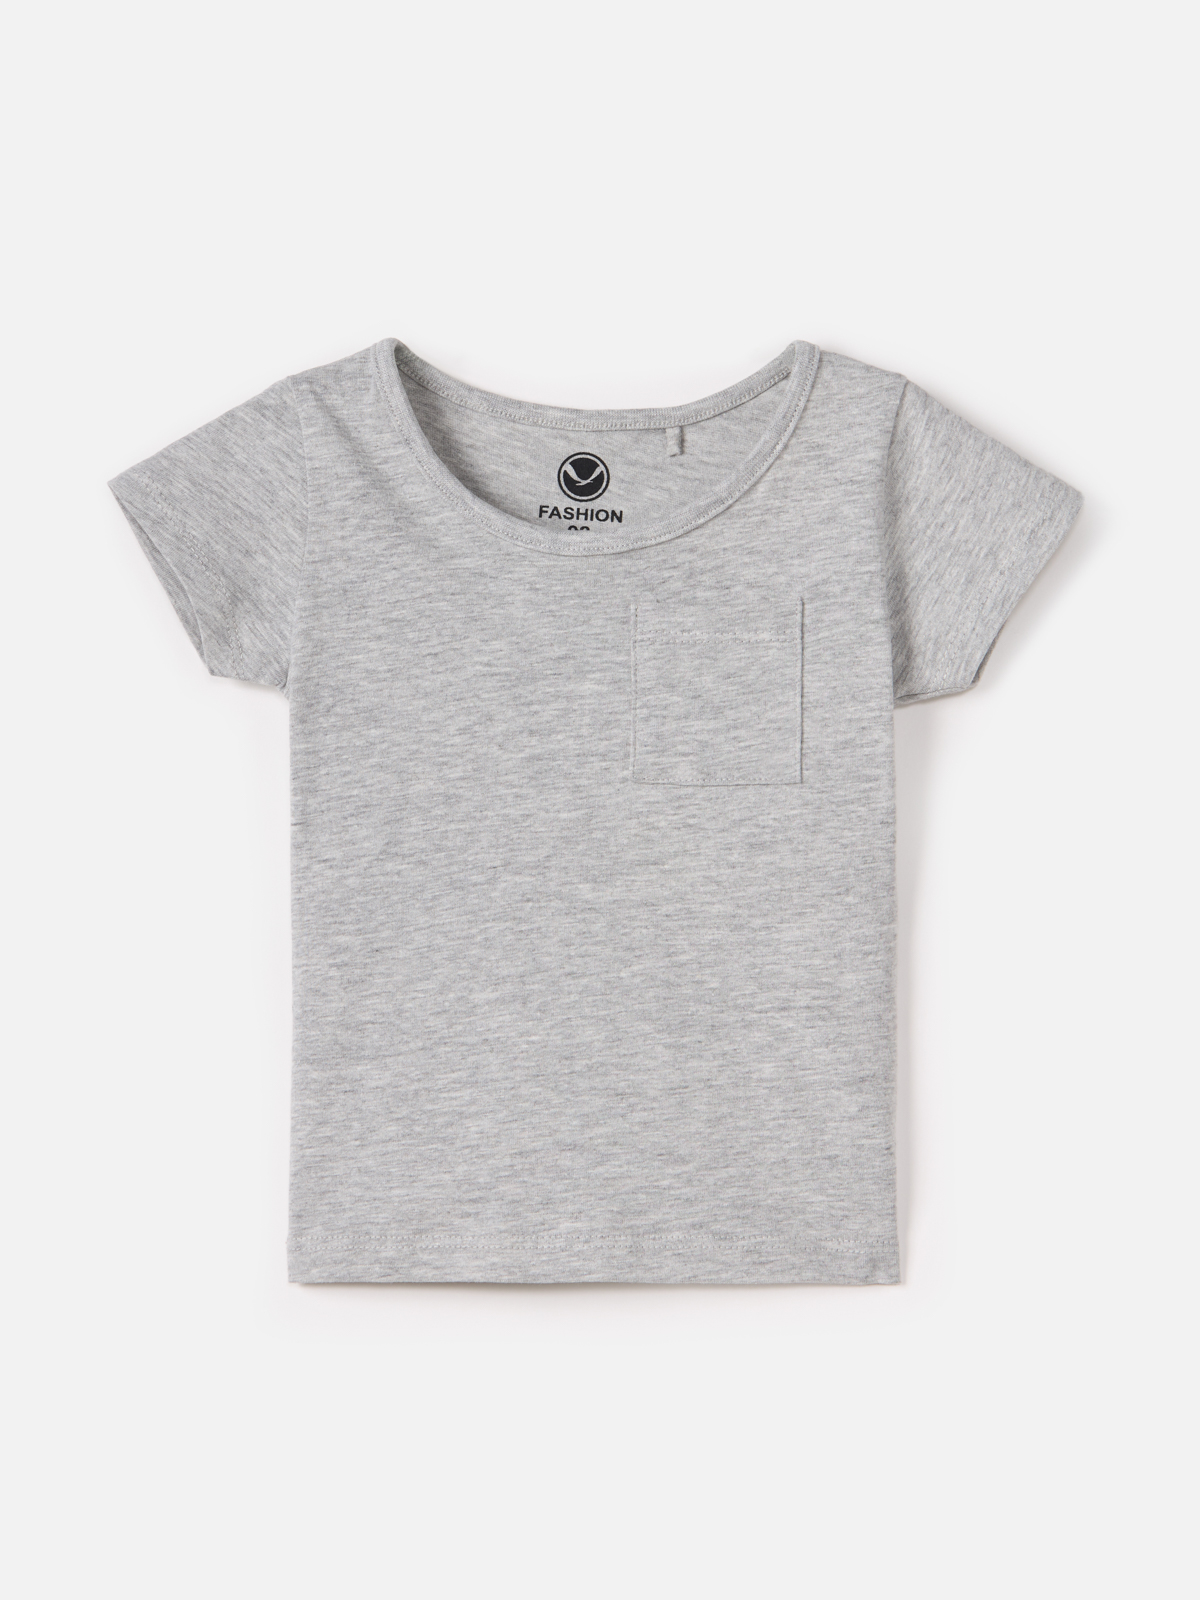 Футболка Harc Fashion для девочек, размер 104, HTC2306-003-light grey melange marmar copenhagen футболка ted grey melange